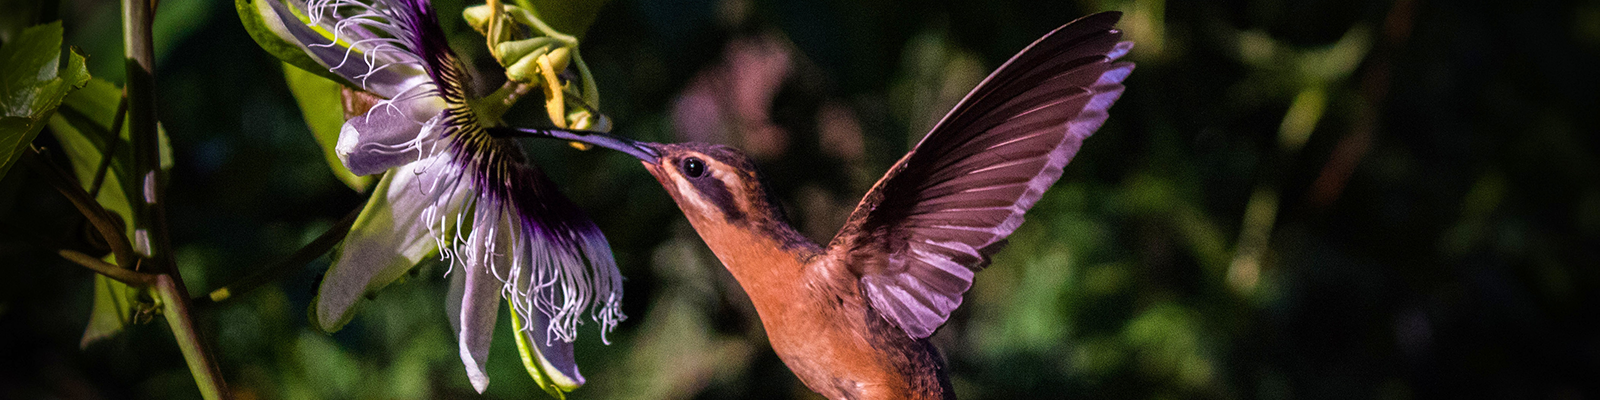 Foto del 1er Concurso de Fotografía - PPGADR - Tu mirada sobre el ambiente. Colibrí de maracuyá. Raúl M. C. dos Santos. Ave colibrí de color marrón en vuelo y tomando el néctar de una flor de maracuyá morada.